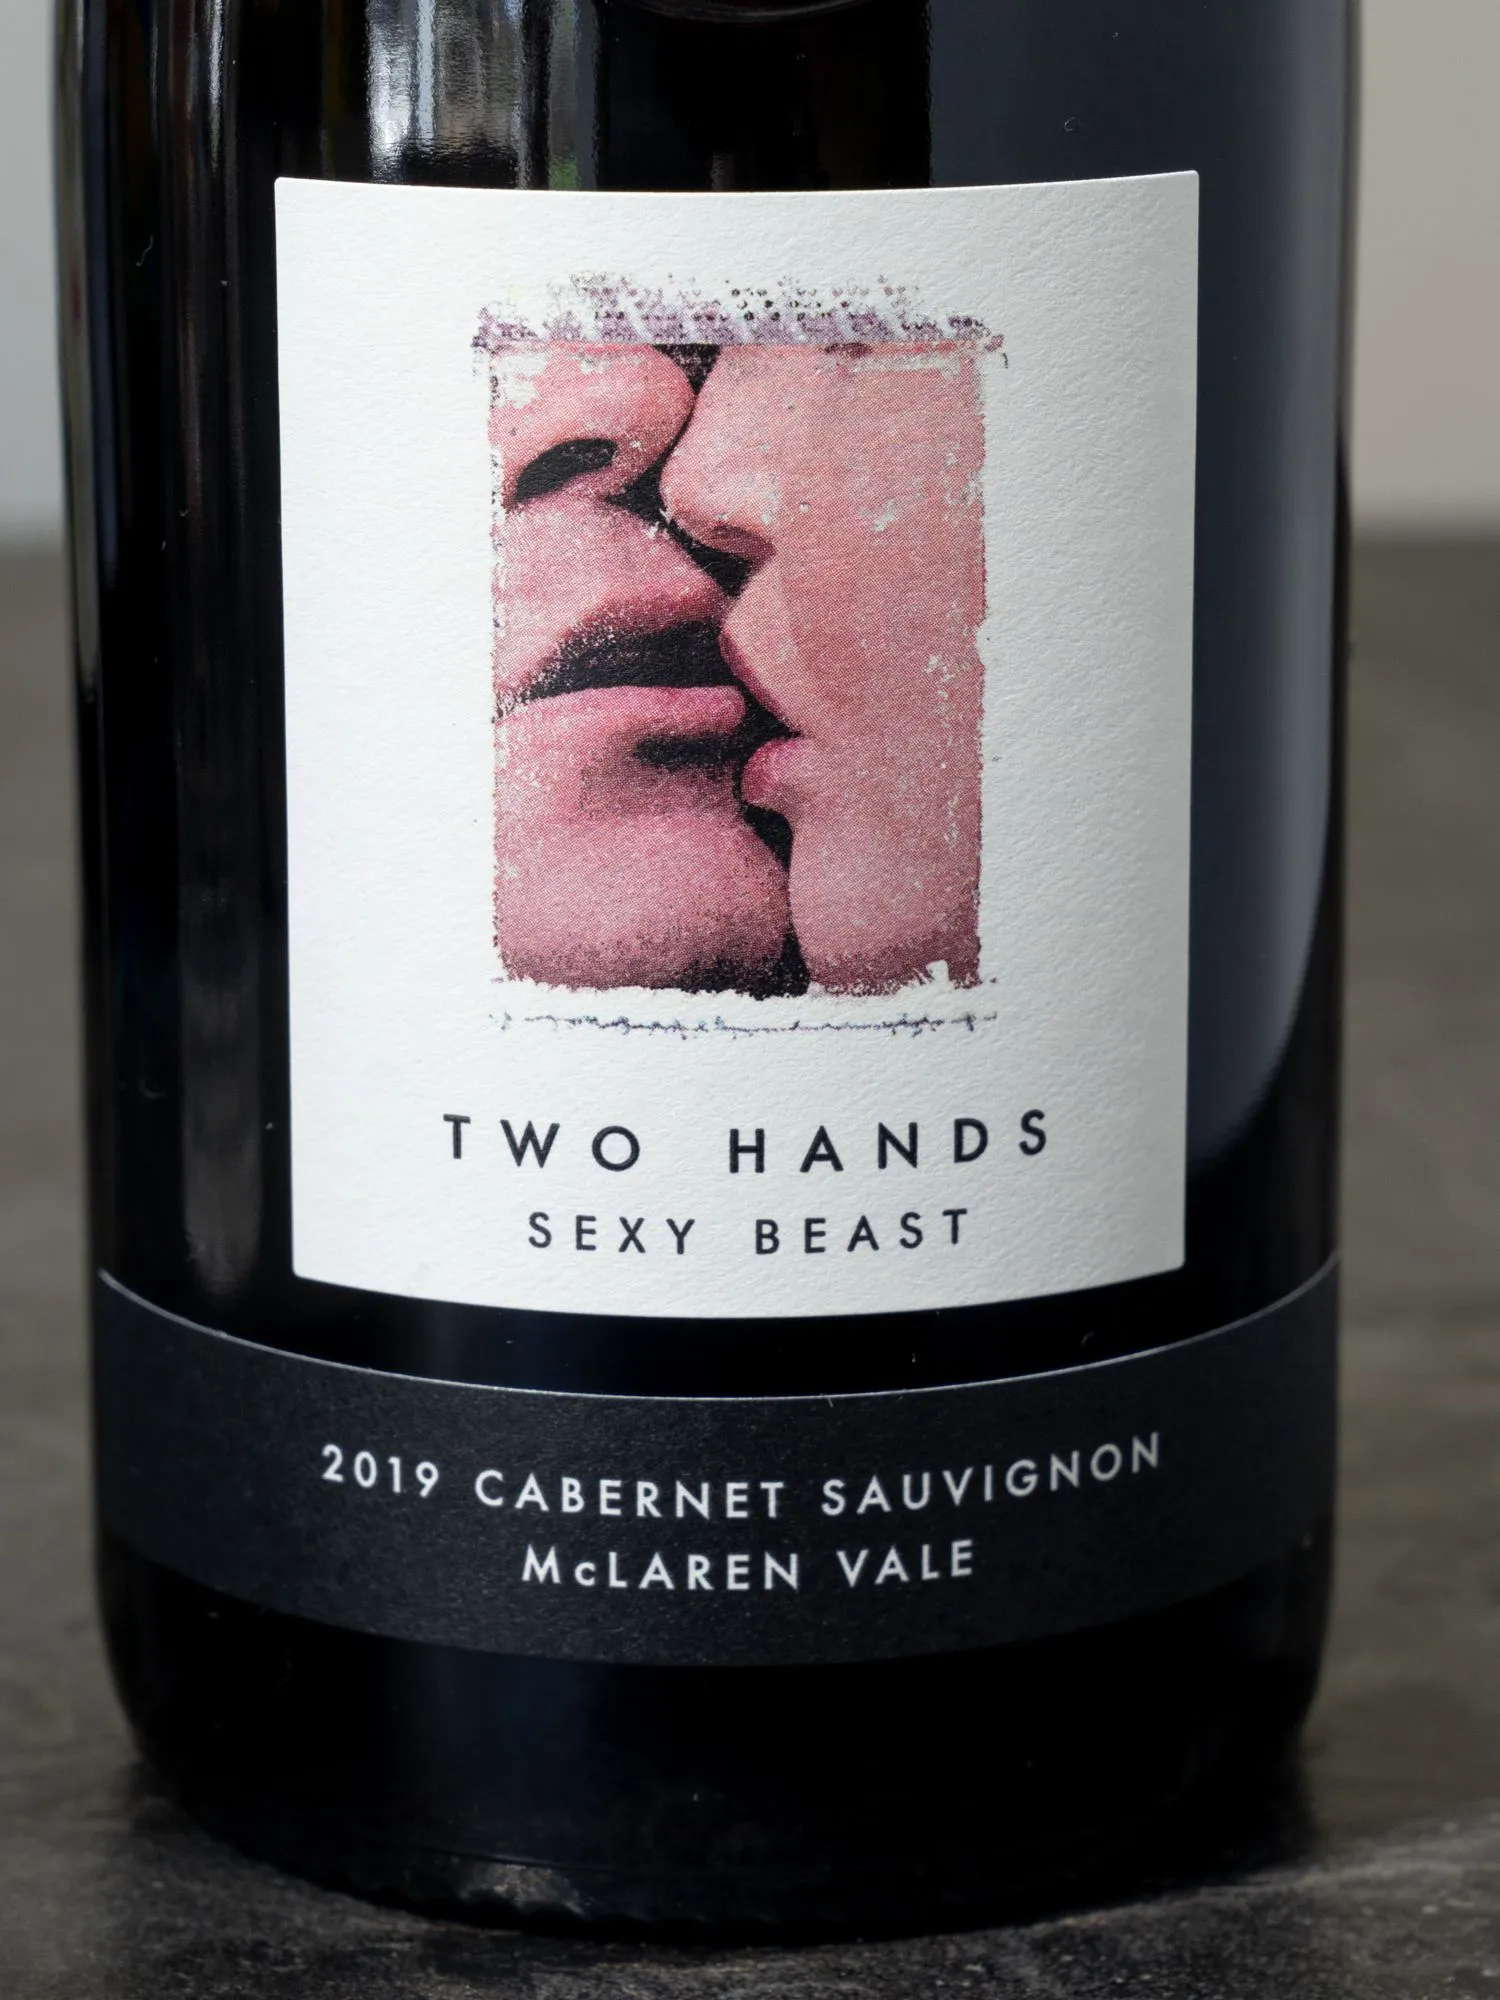 Вино Two Hands Sexy Beast McLaren Vale /Ту Хэндз Сэкси Бист Макларен Вэйл